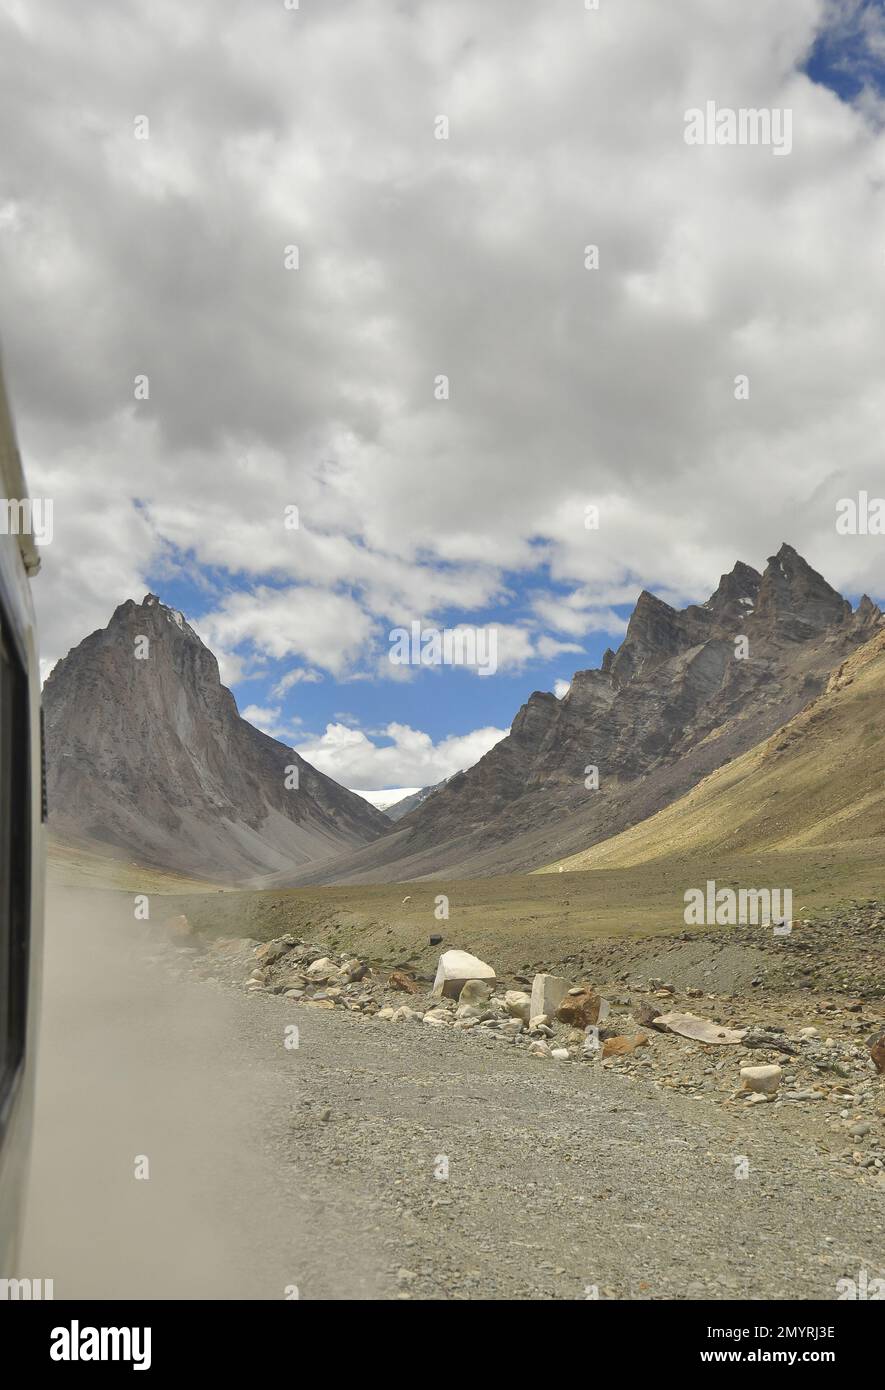 Le mont Saint Gumbok Rangan (Gonbo Rangjon) vue depuis la voiture en mouvement en voyageant sur la route Darca-Padum, vallée de Lungnak, Zanskar, Ladakh, INDE. Banque D'Images